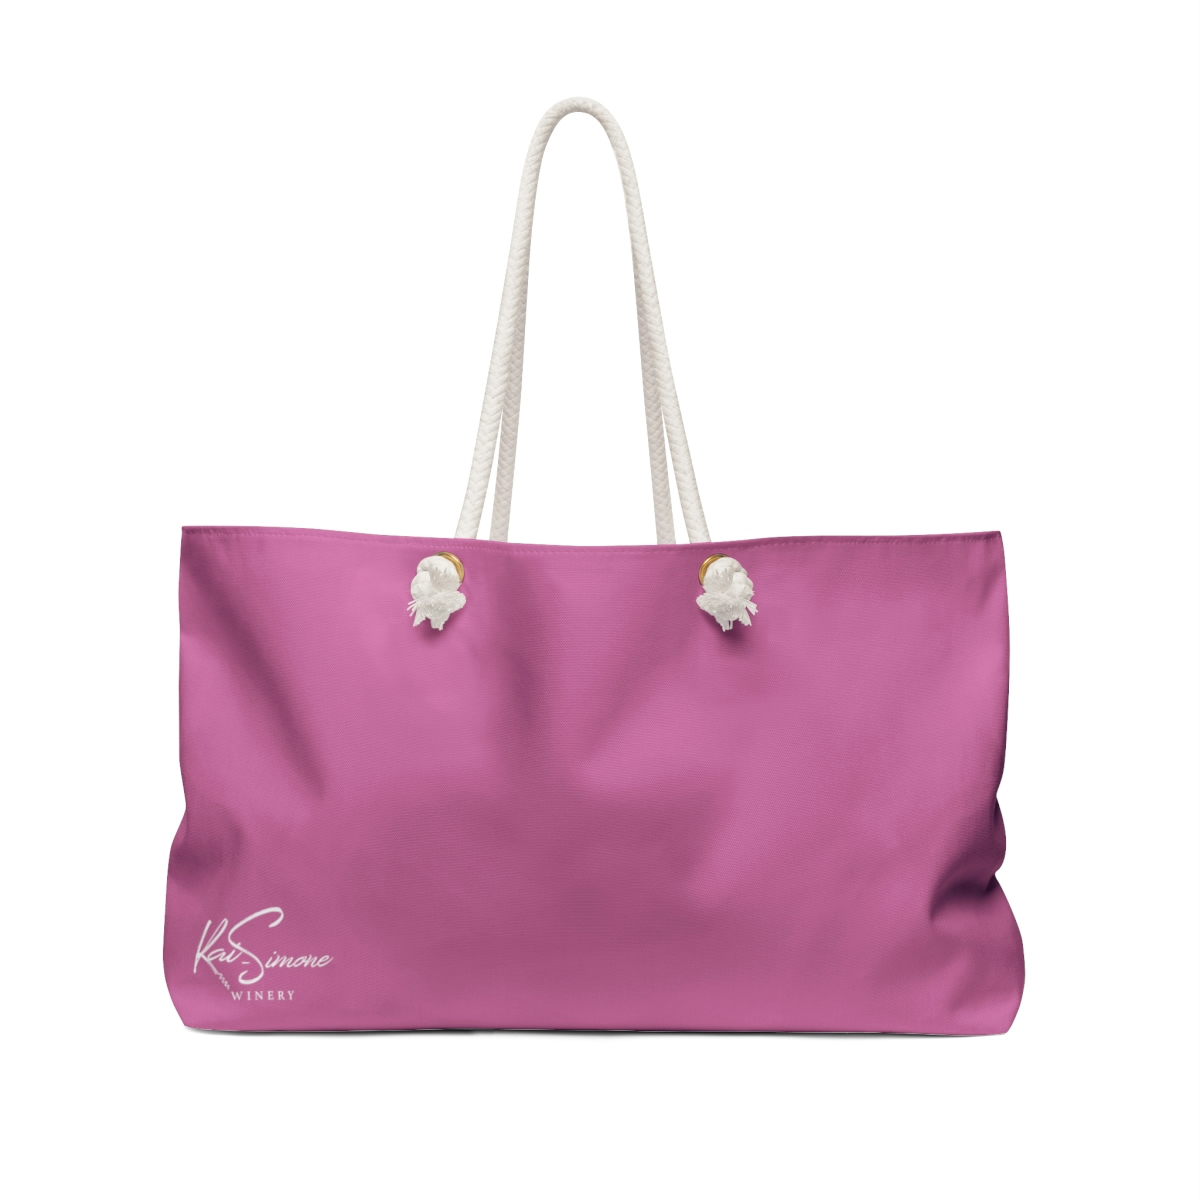 Kai-Simone Weekender Bag PINK - Kai Simone Winery